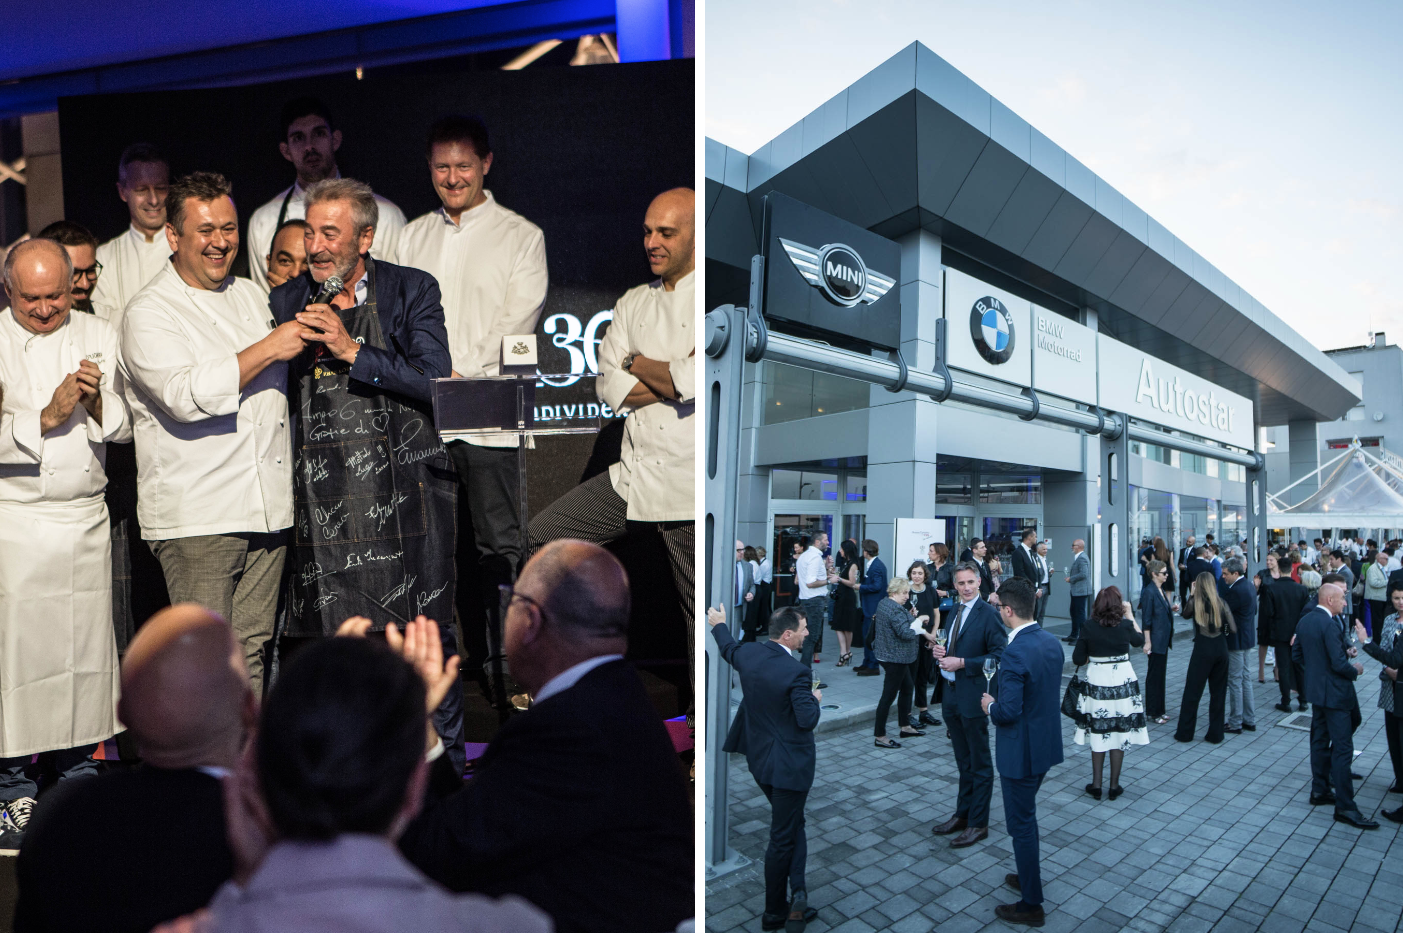 La concessionaria BMW Autostar si trasforma in ristorante stellato